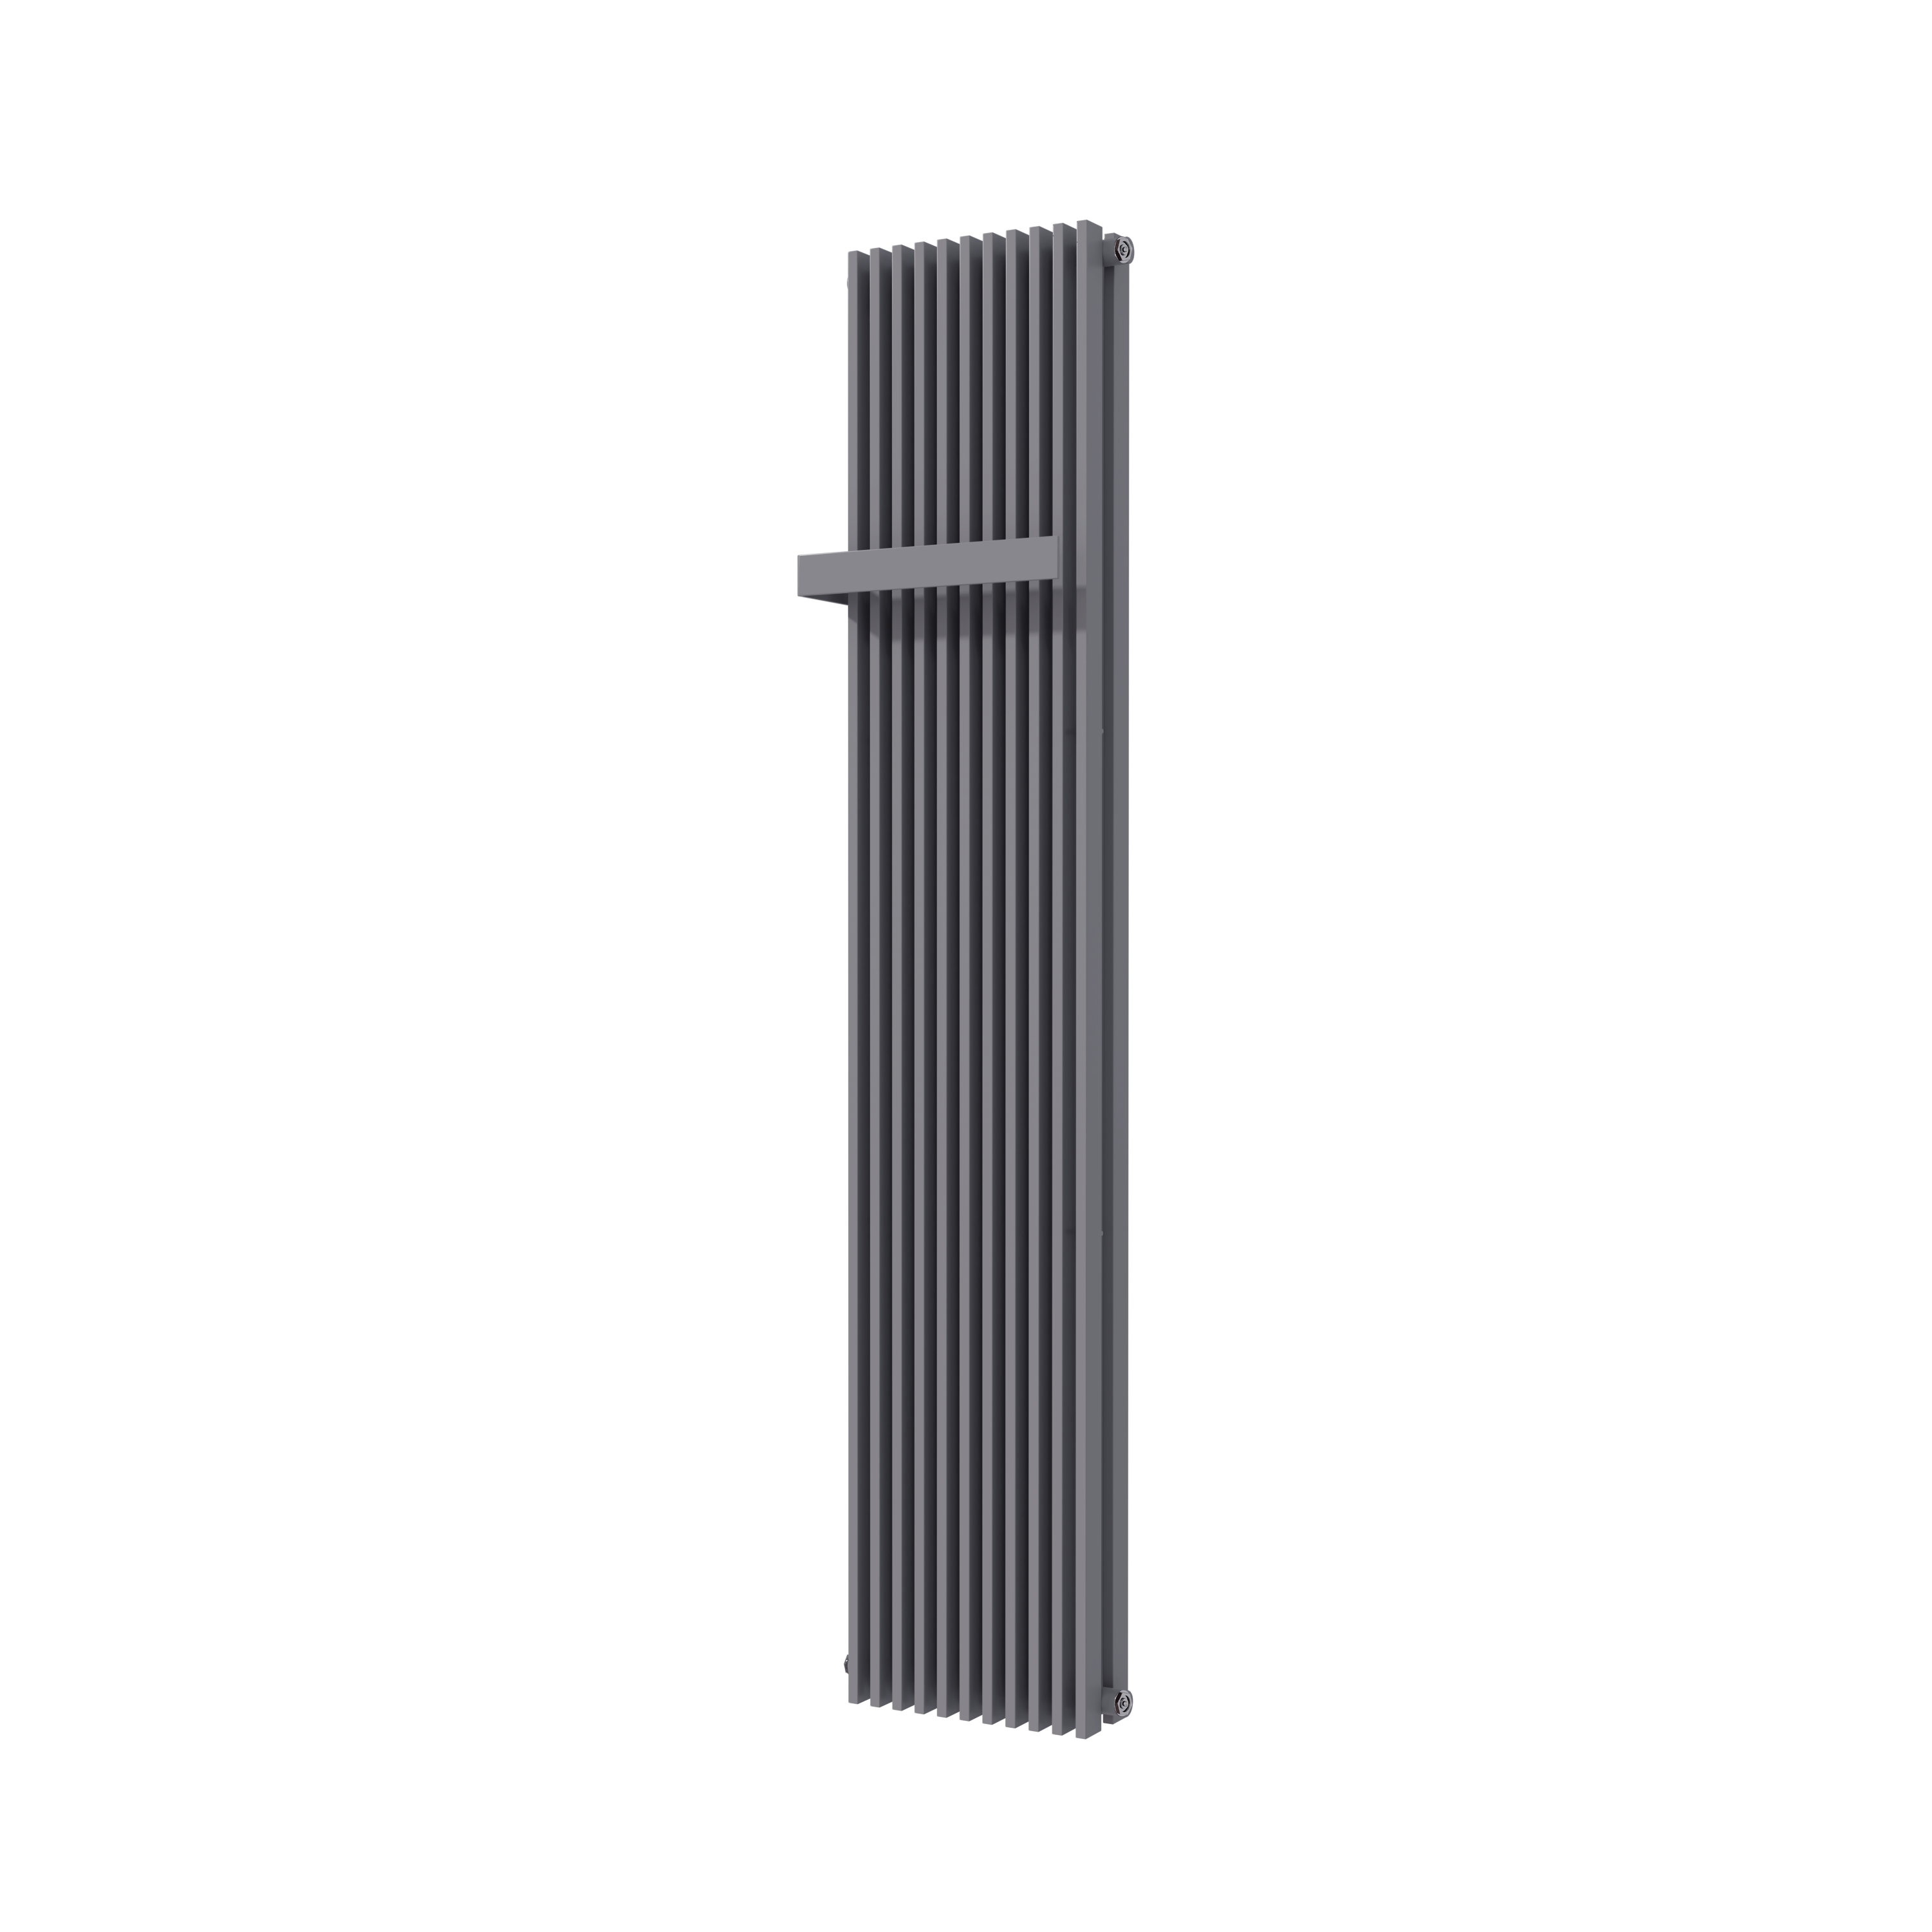 Vipera Corrason dubbele badkamerradiator 40 x 180 cm centrale verwarming antraciet grijs zij- en middenaansluiting 2.238W